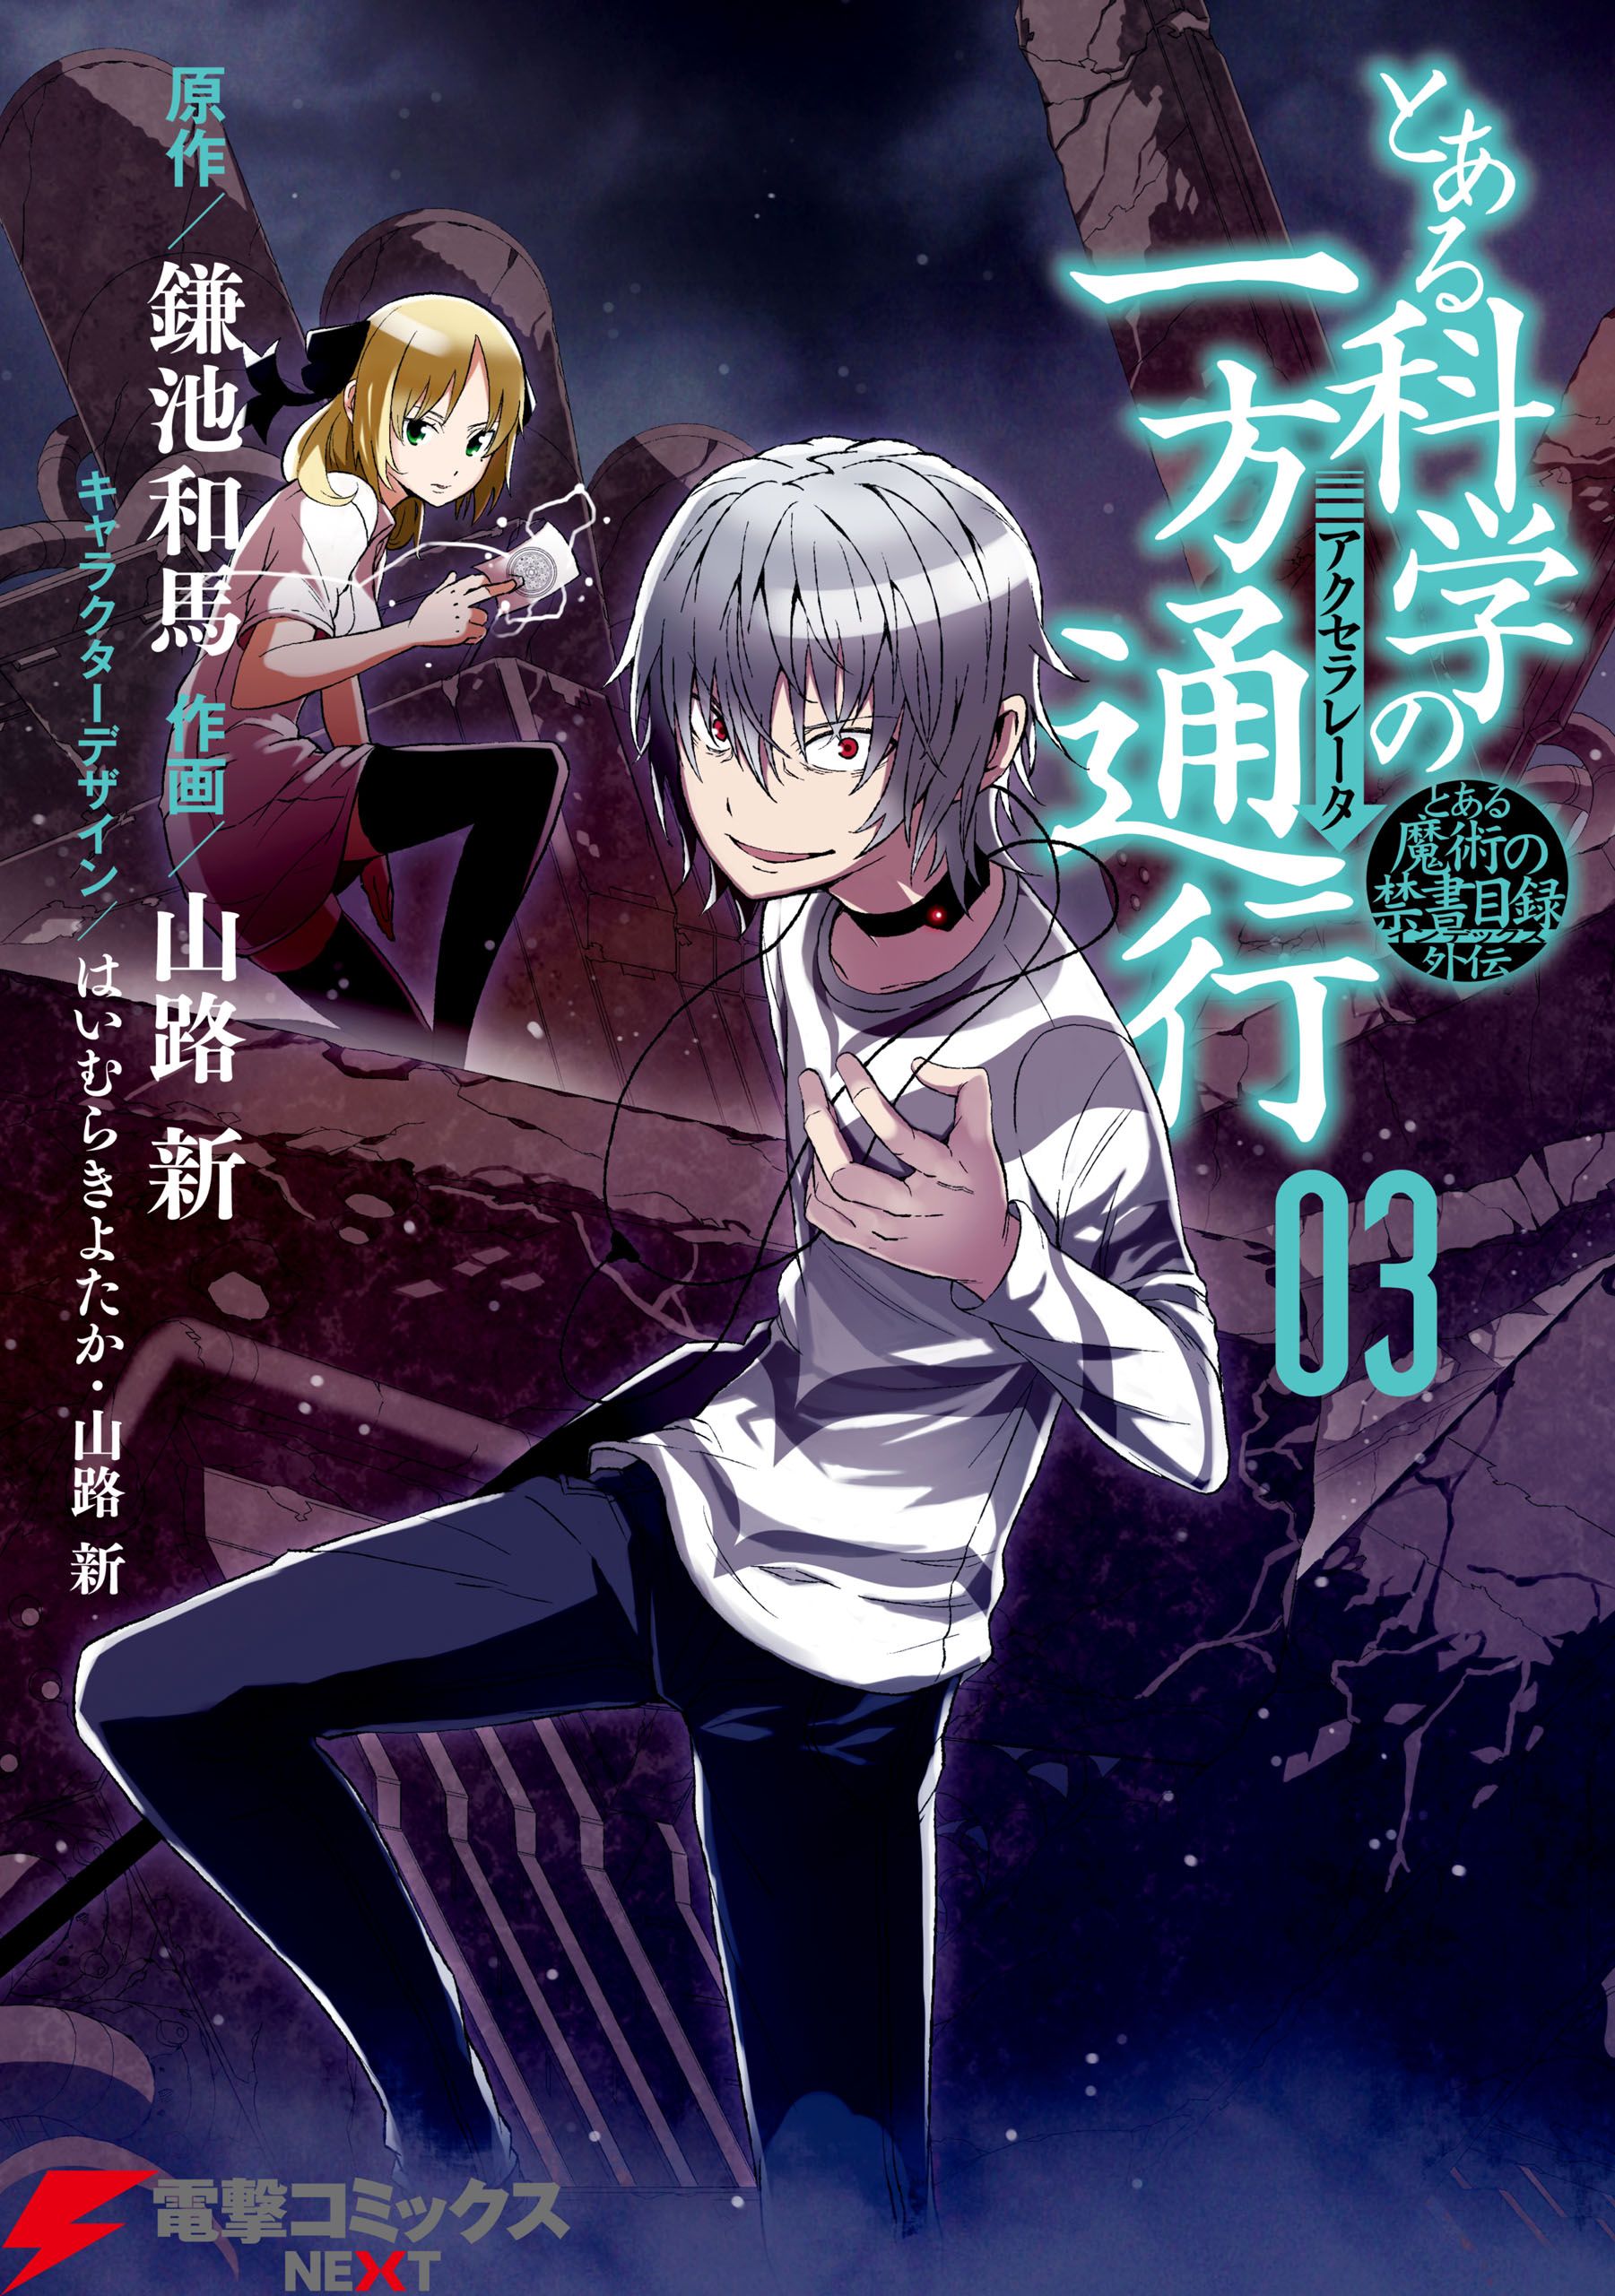 Toaru Kagaku no Accelerator Manga Volume 03. Toaru Majutsu no